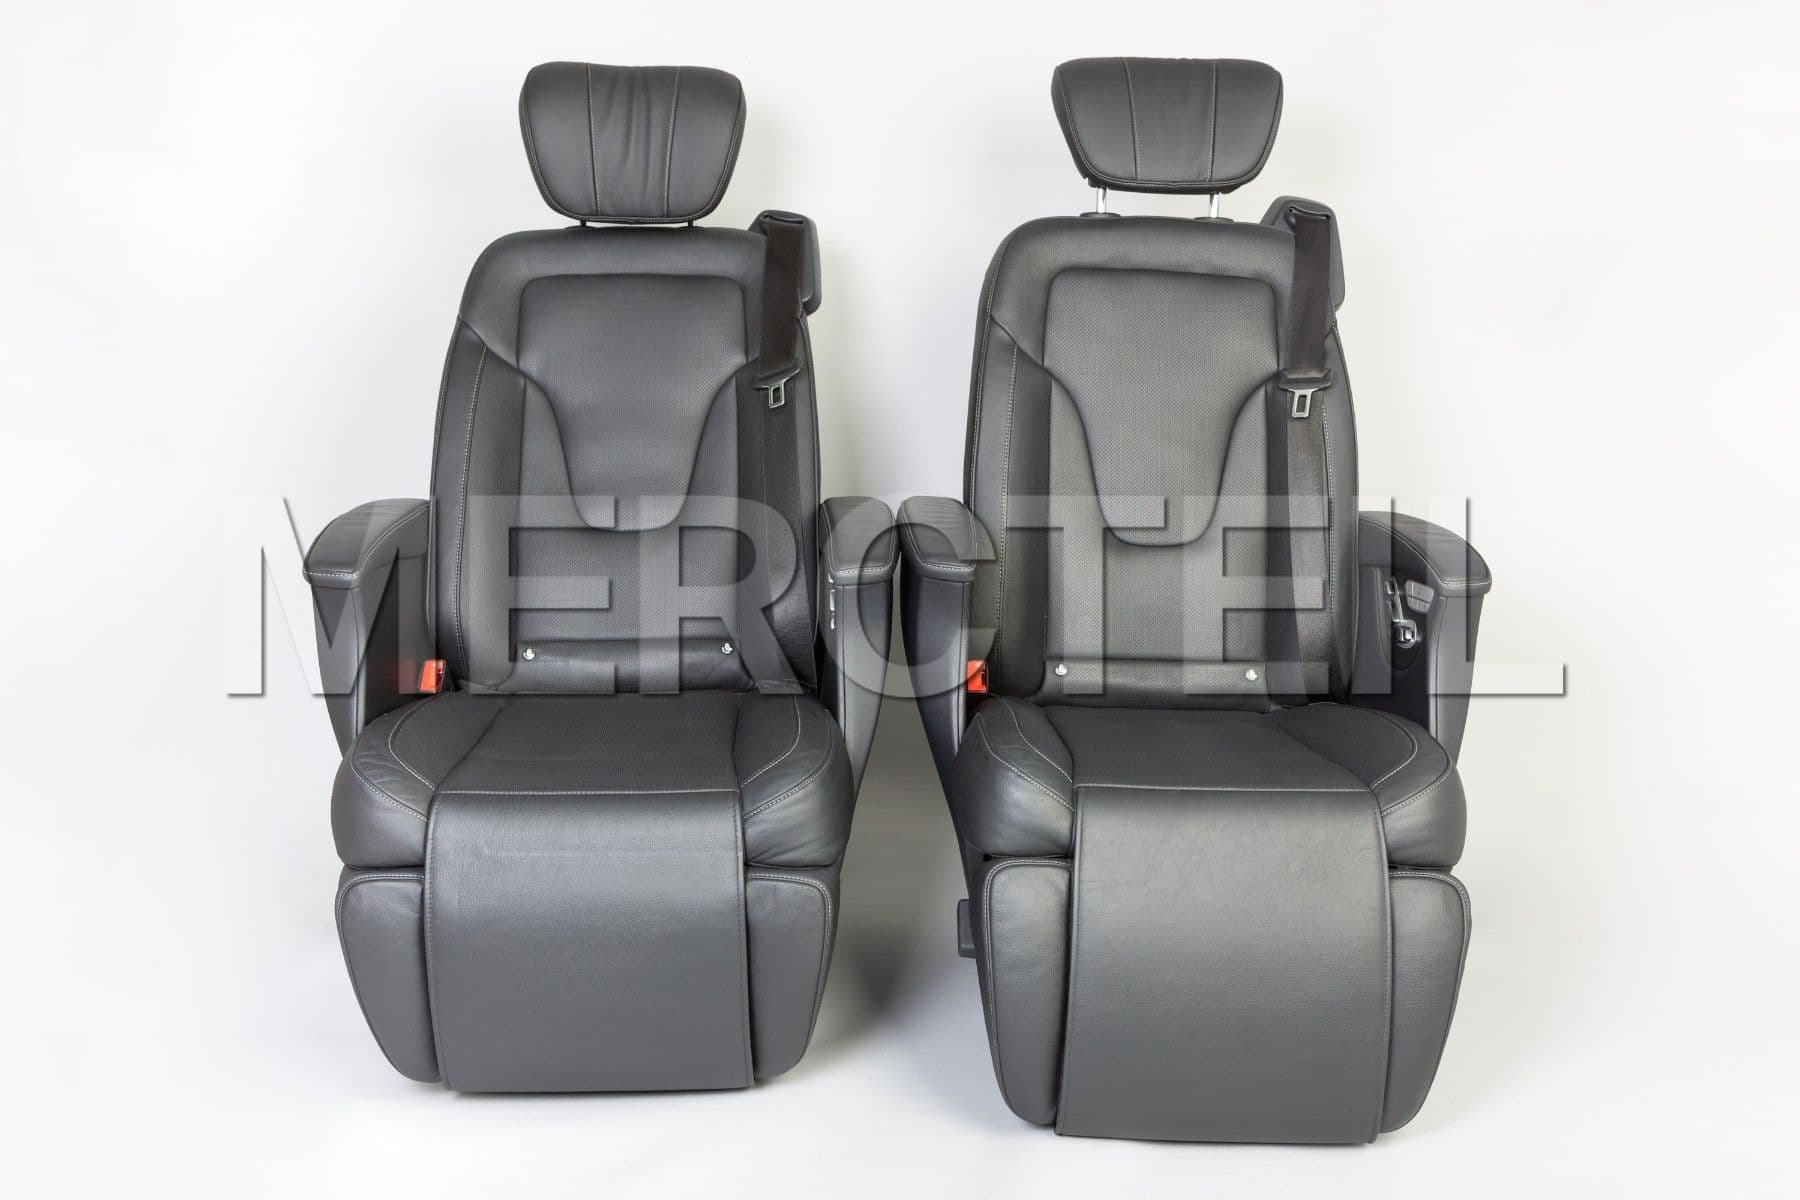 V-Class Business Seats 447 Genuine Mercedes-Benz A44894032009E43  A44894033009E43